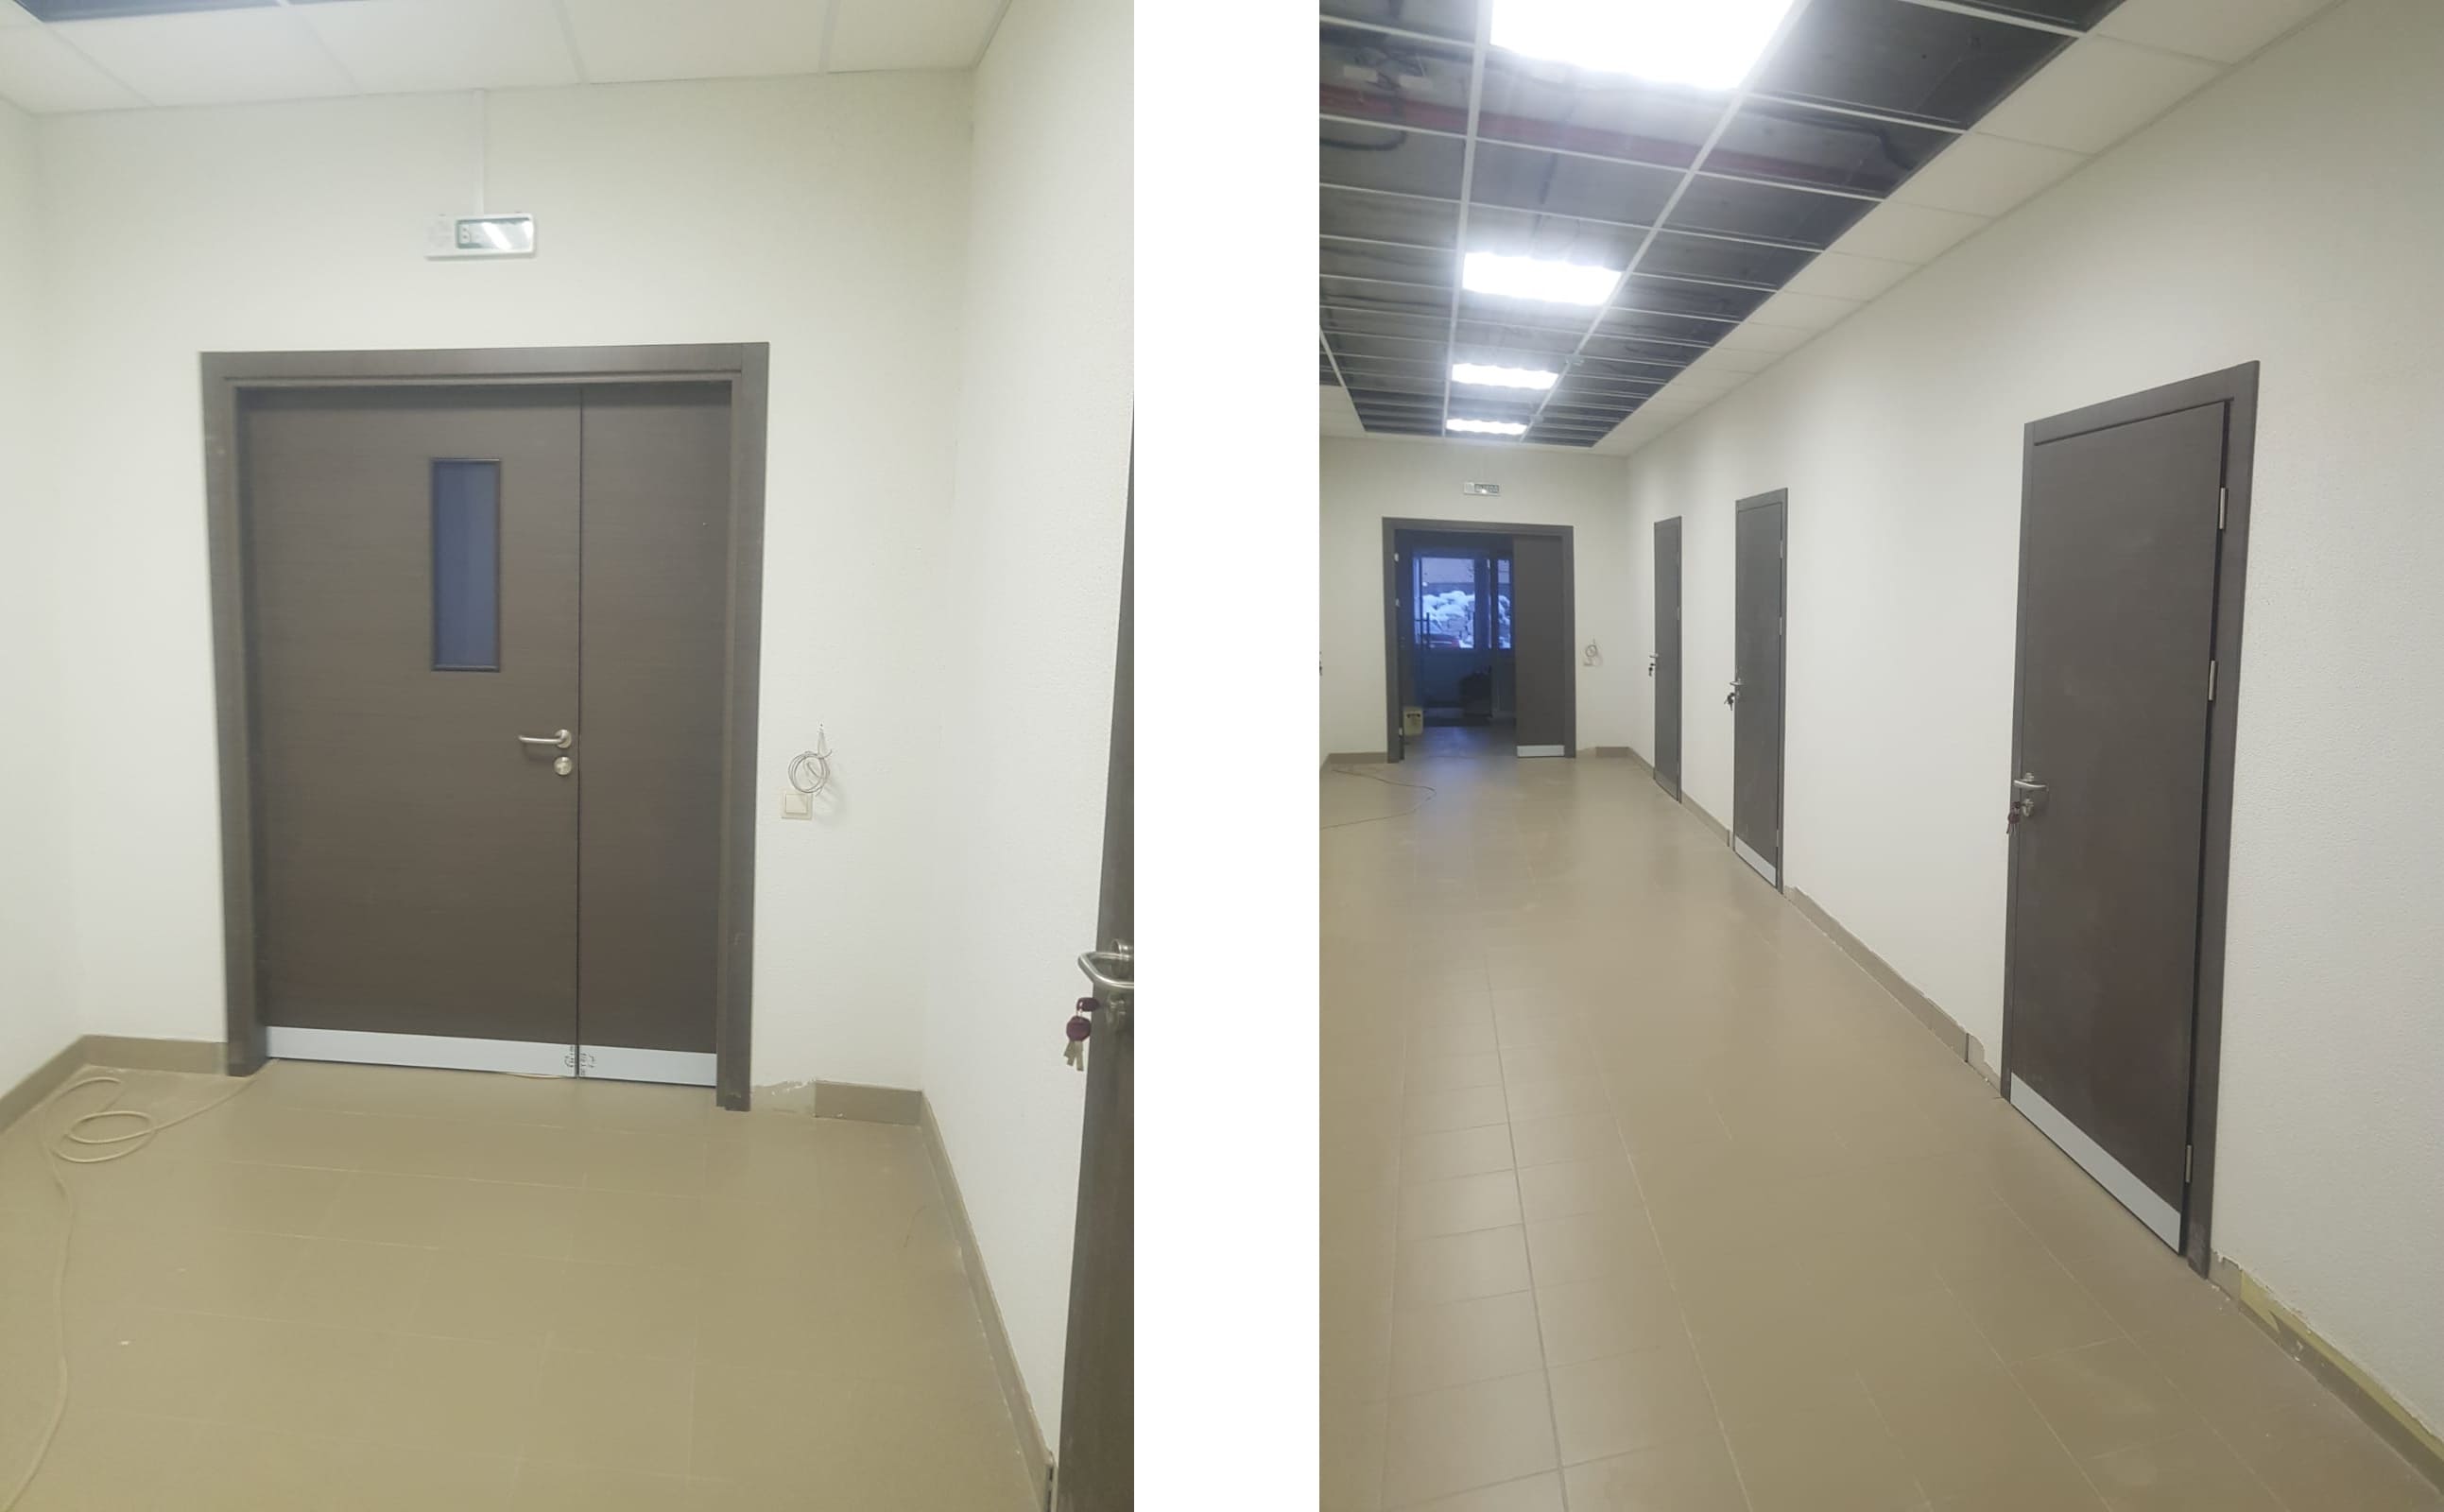 Серые распашные двери в коридоре бизнес-центра